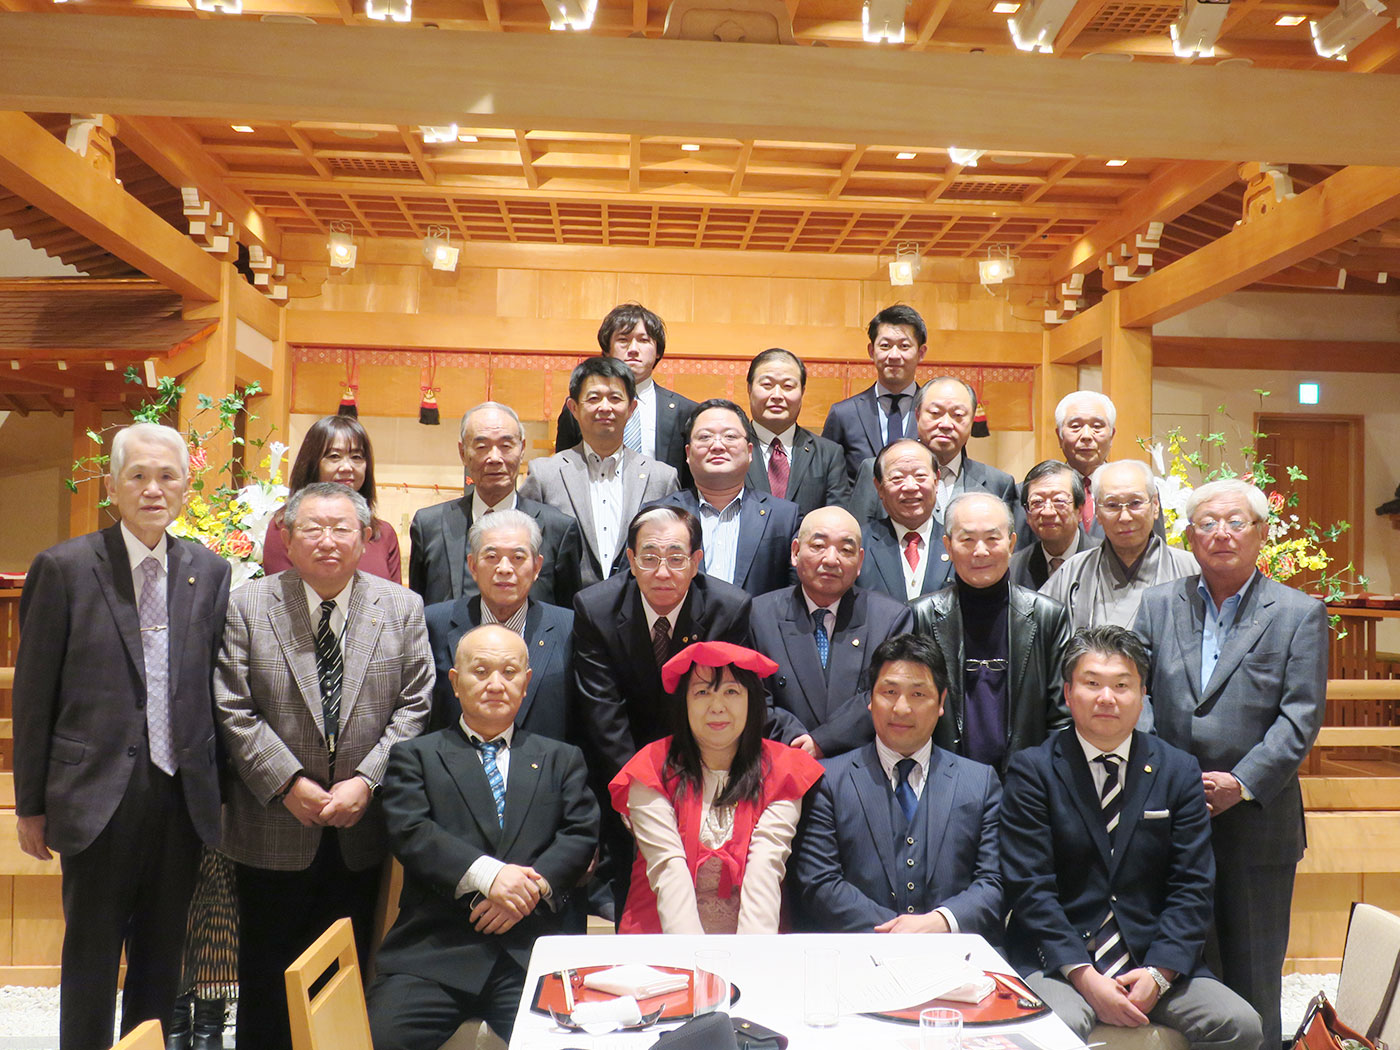 仙台エコーライオンズクラブお歳祝会が行われました。